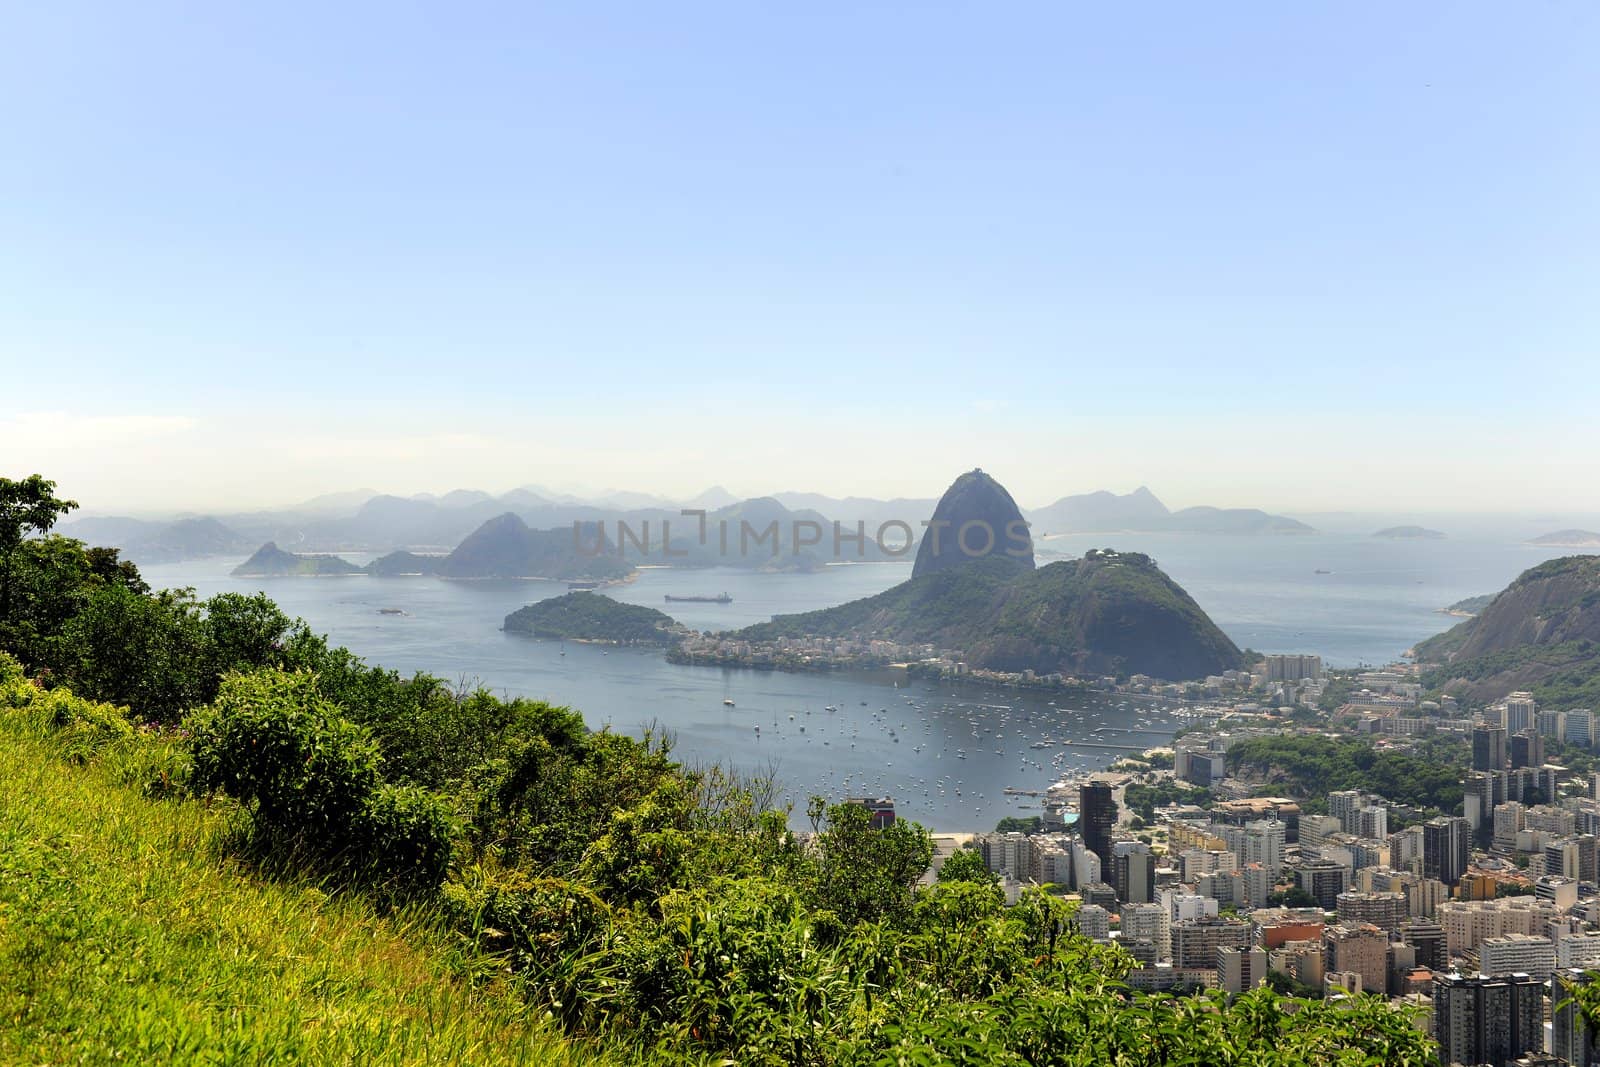 Rio de Janeiro, Sugarloaf Mountain and Botafogo by mangostock